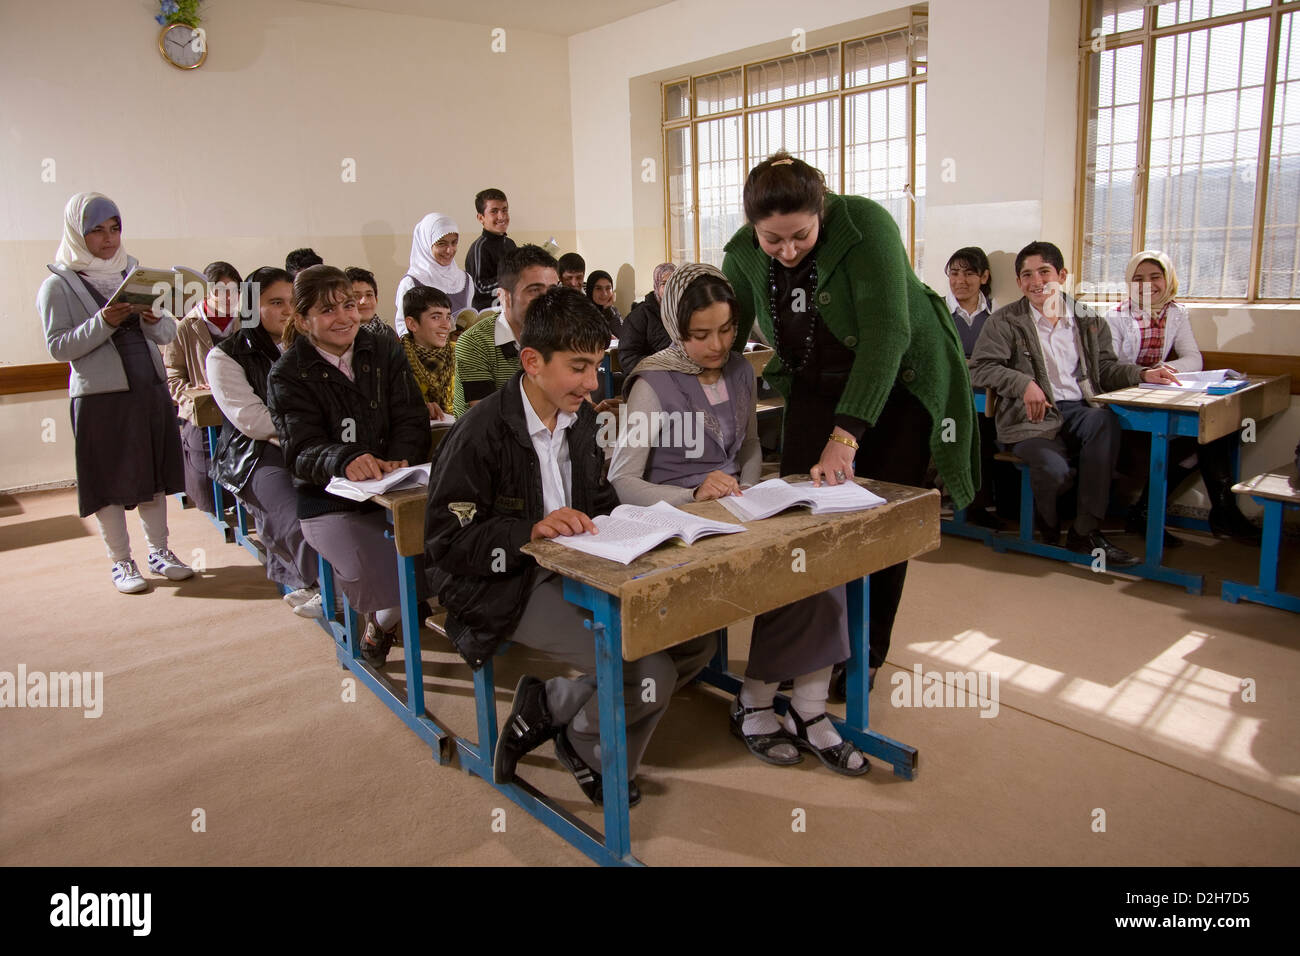 All'interno della scuola secondaria aula con maschio e femmina adolescente musulmano gli studenti di lingua curda nel Kurdistan nord dell Iraq Foto Stock